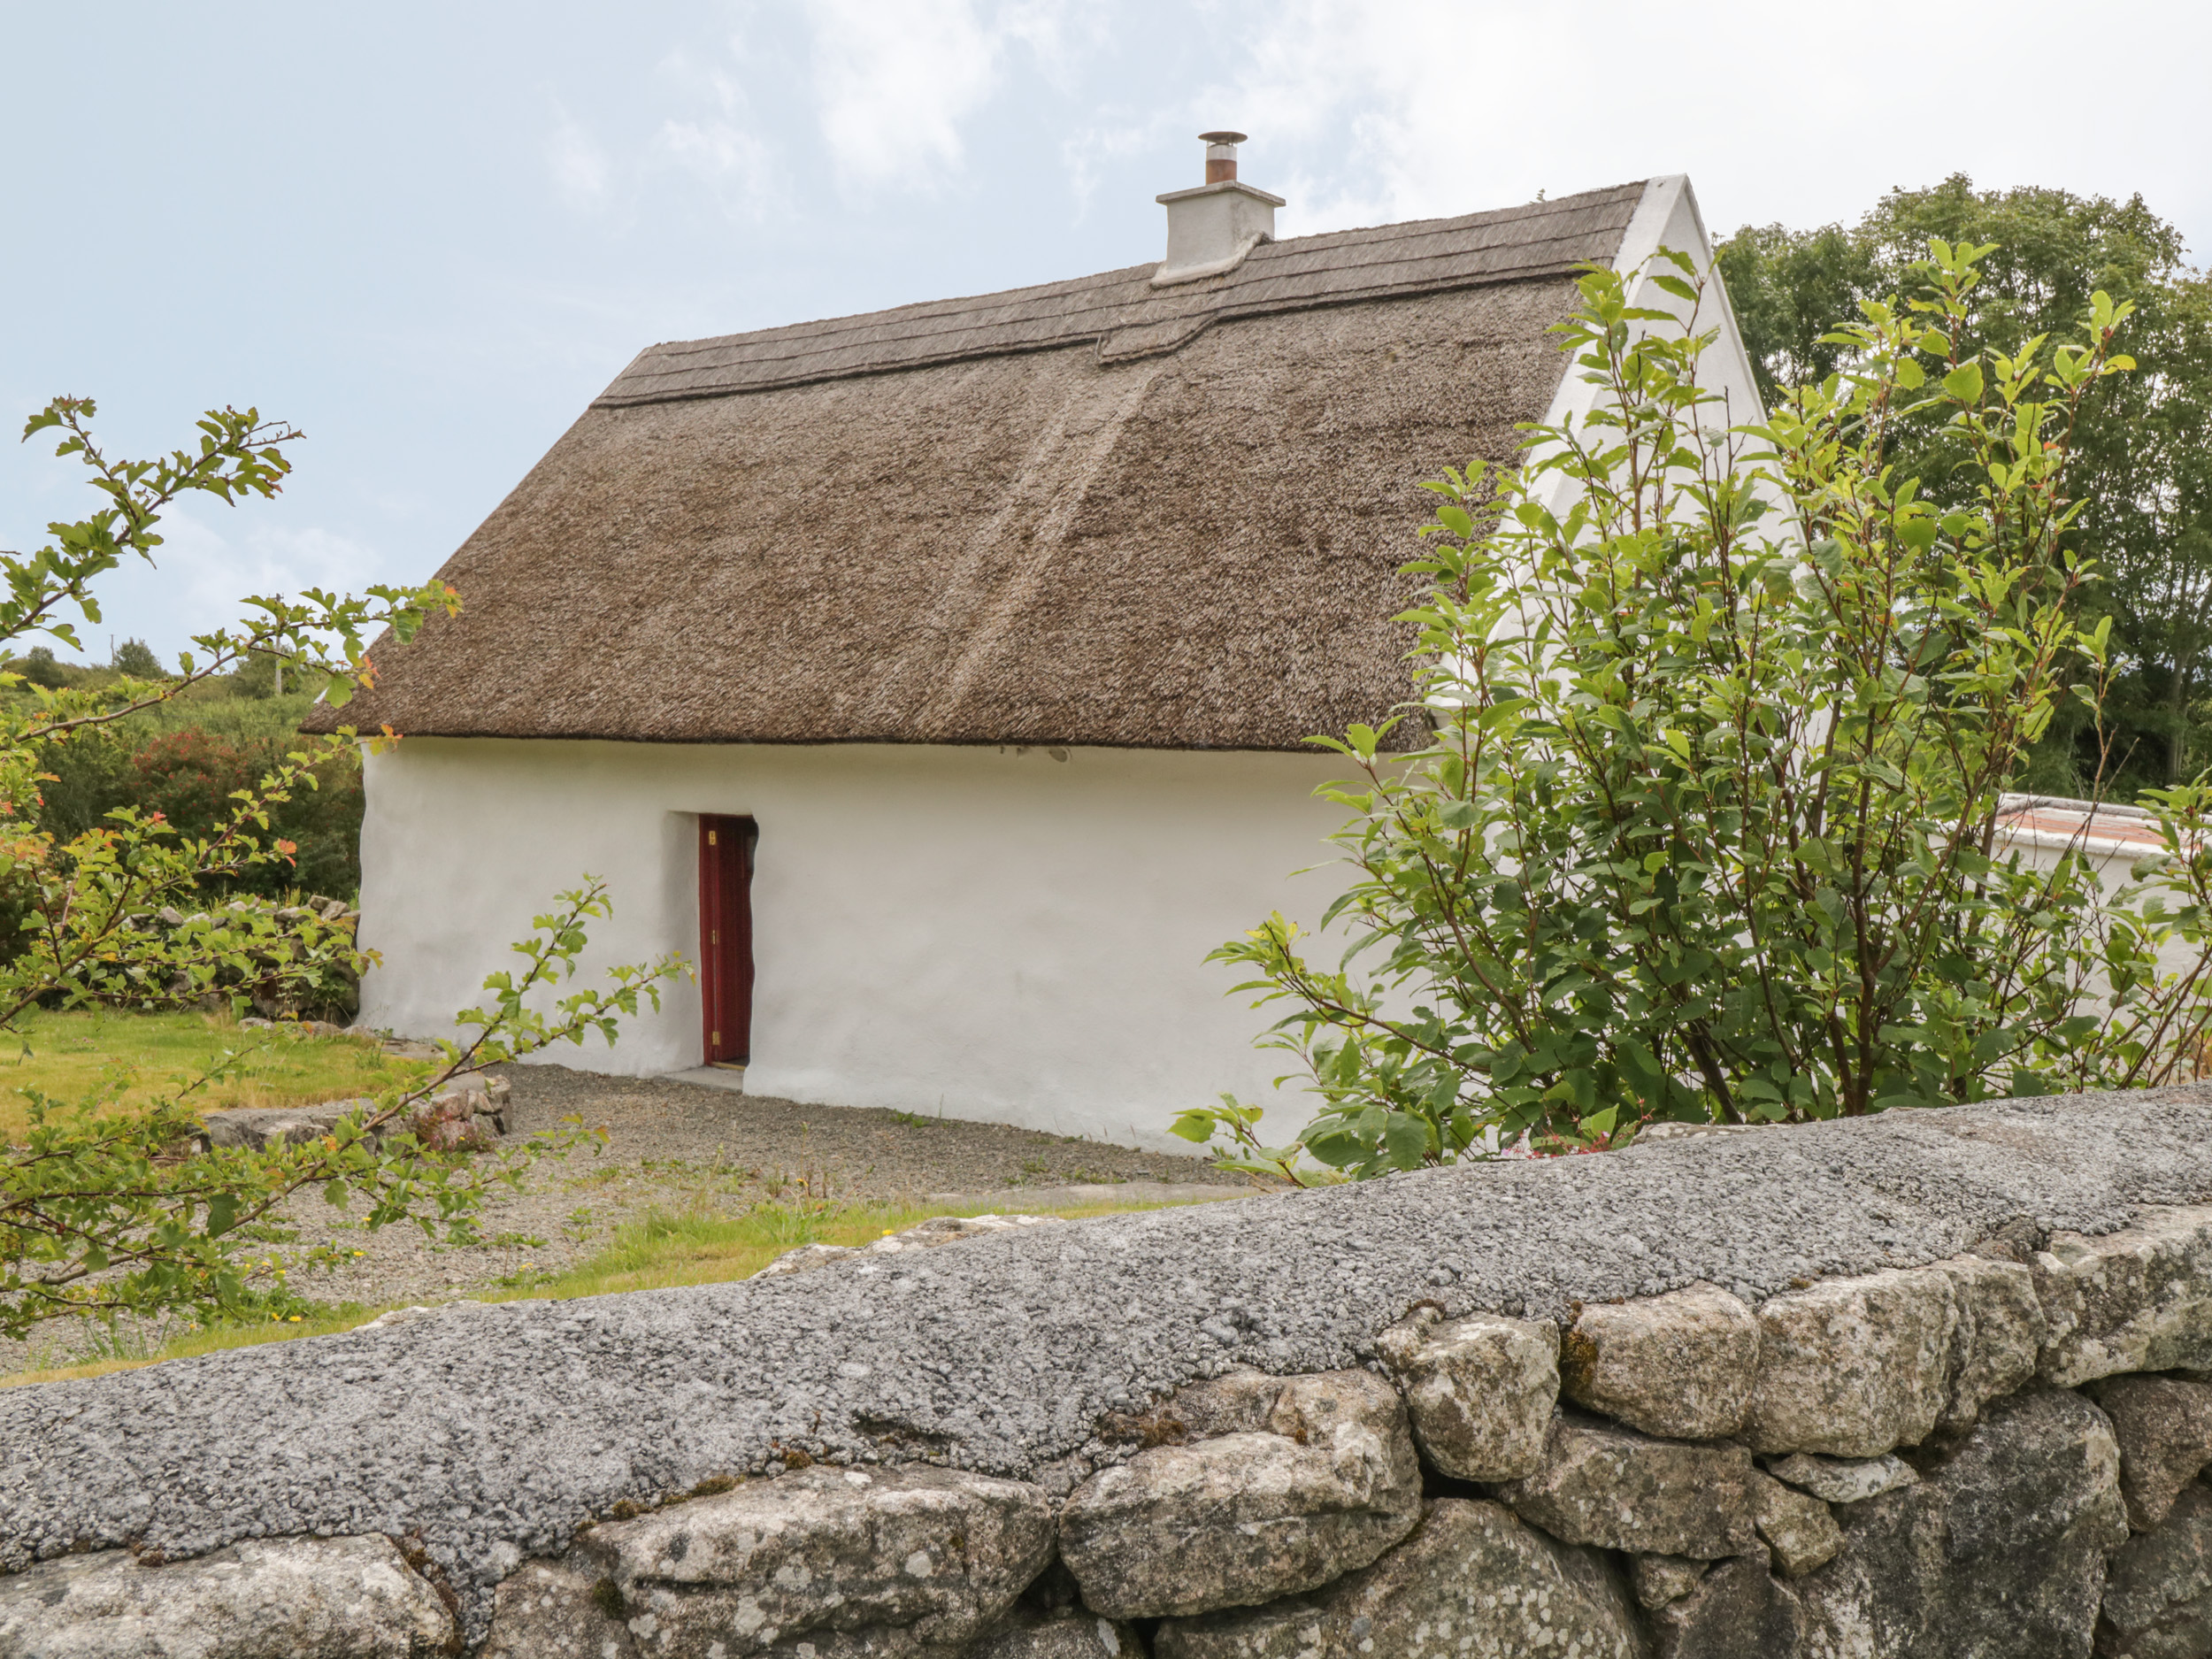 Spiddal Thatch Cottage, Ireland